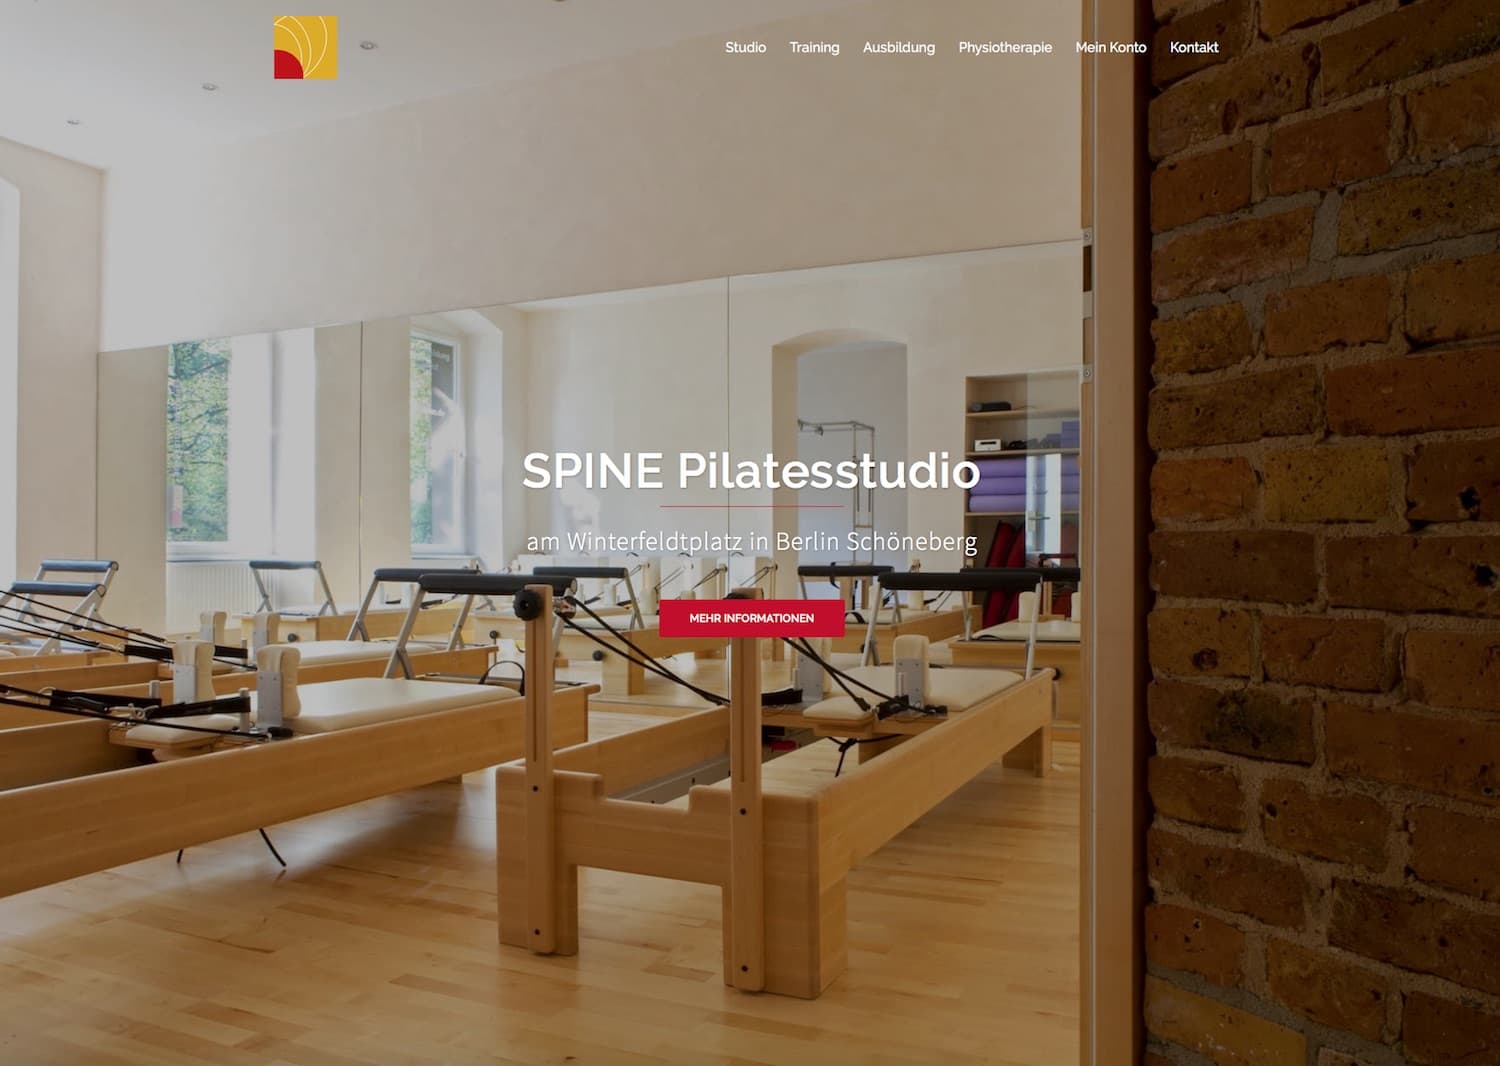 SPINE Pilatesstudio